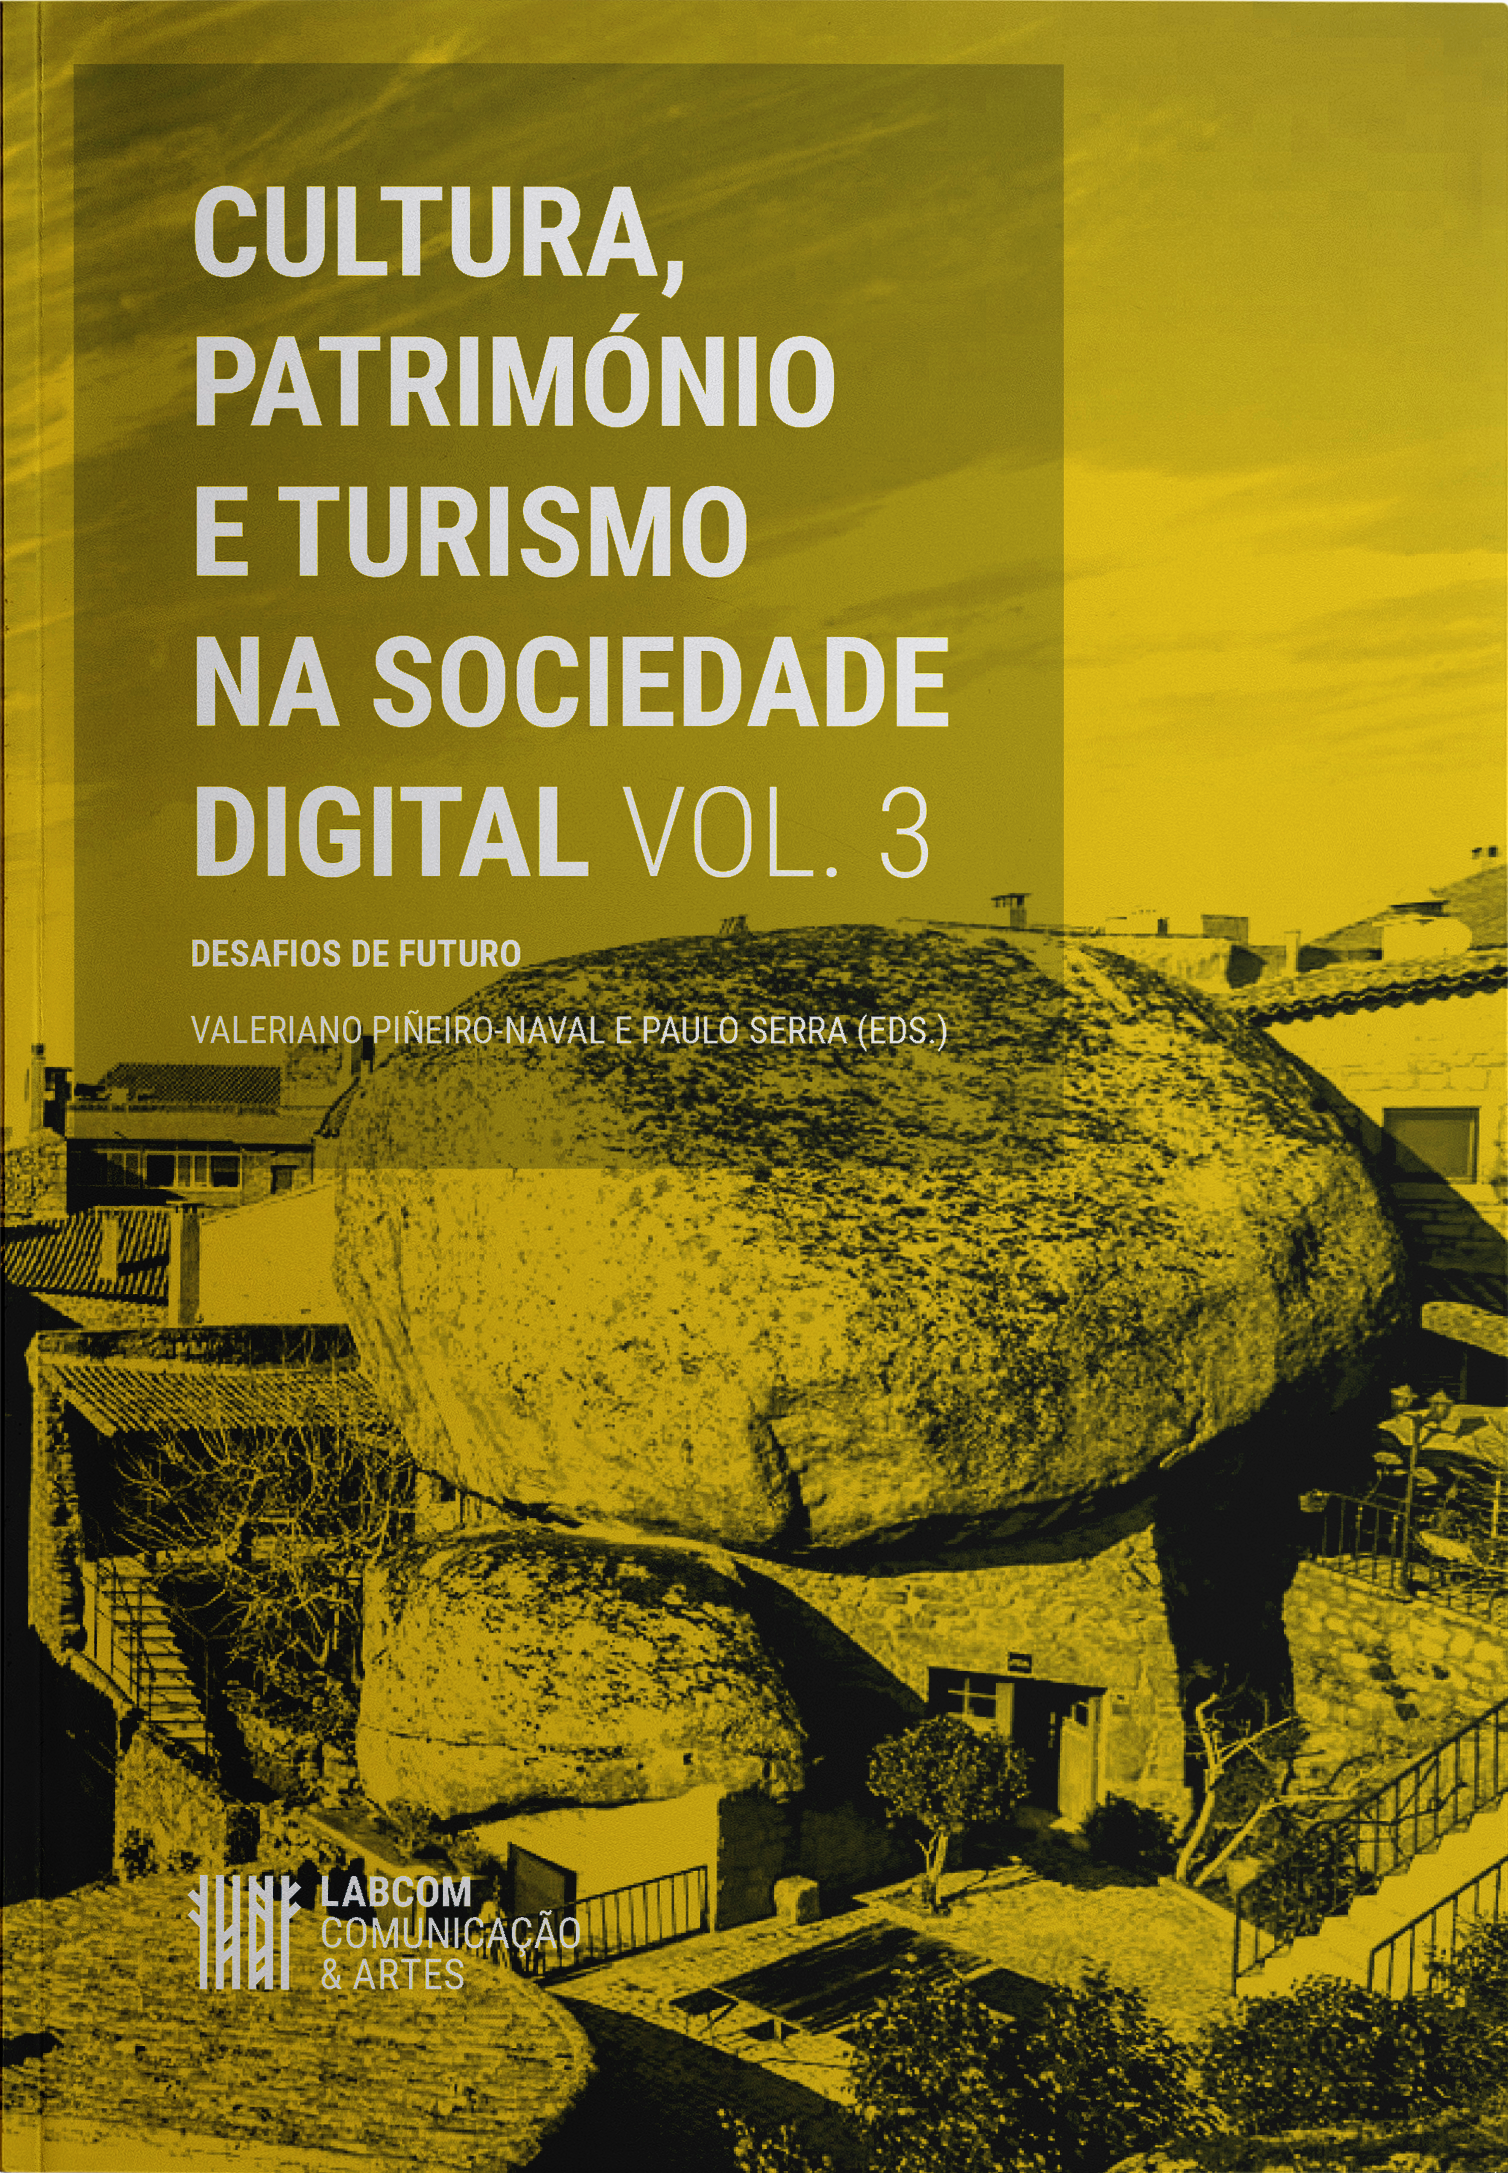 Capa: Valeriano Piñeiro-Naval e Paulo Serra (Eds.) (2020) Cultura, Património e Turismo na Sociedade Digital (Vol. 3): Desafios de futuro . Communication  +  Philosophy  +  Humanities. .